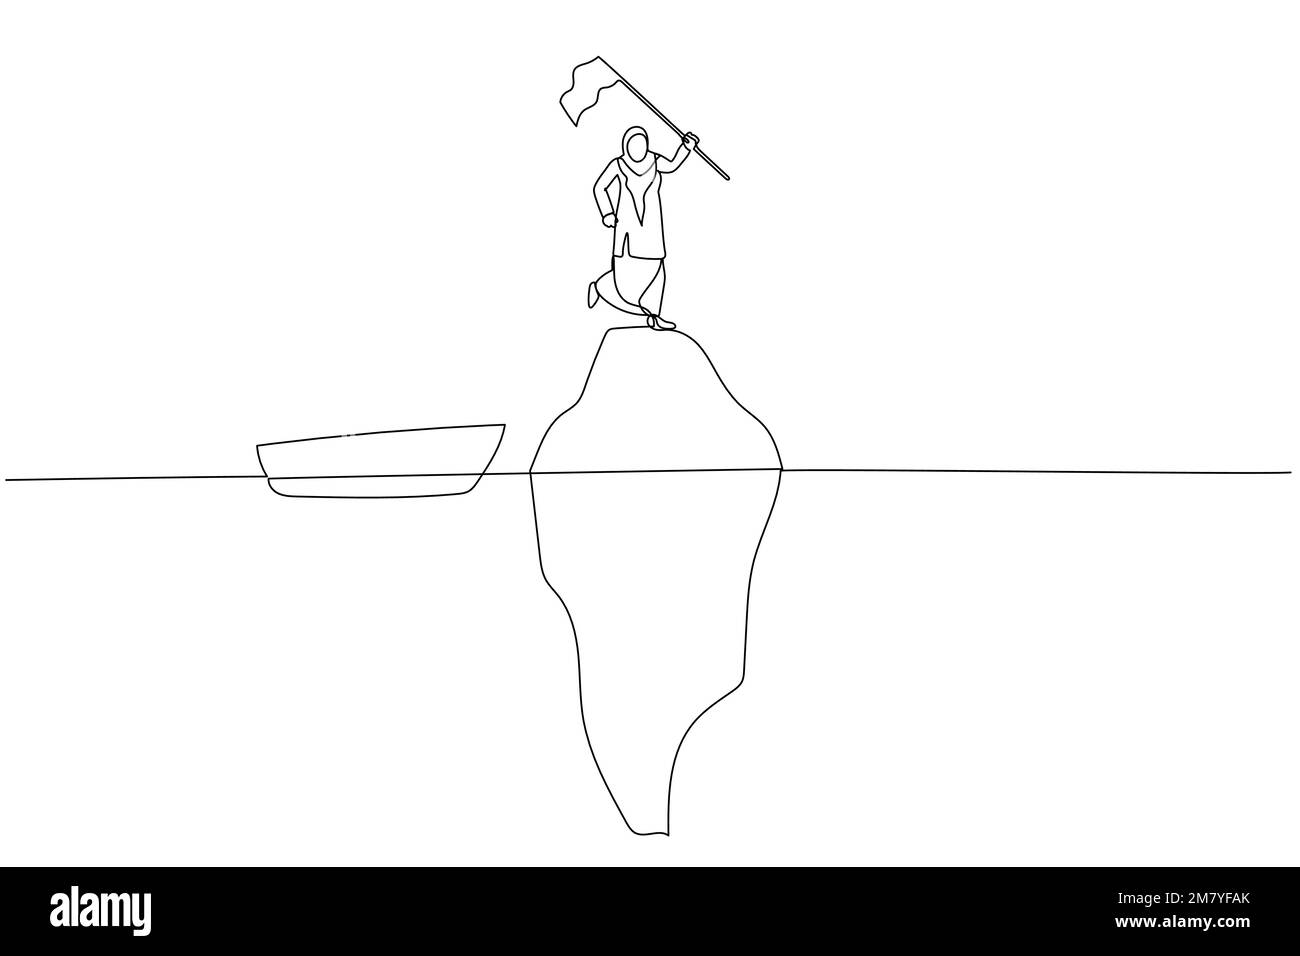 Zeichnung einer muslimischen Geschäftsfrau, die die Flagge auf dem Gipfel des Eisbergs hält, Konzept der Illusion. Design im Kunststil mit einer durchgehenden Linie Stock Vektor